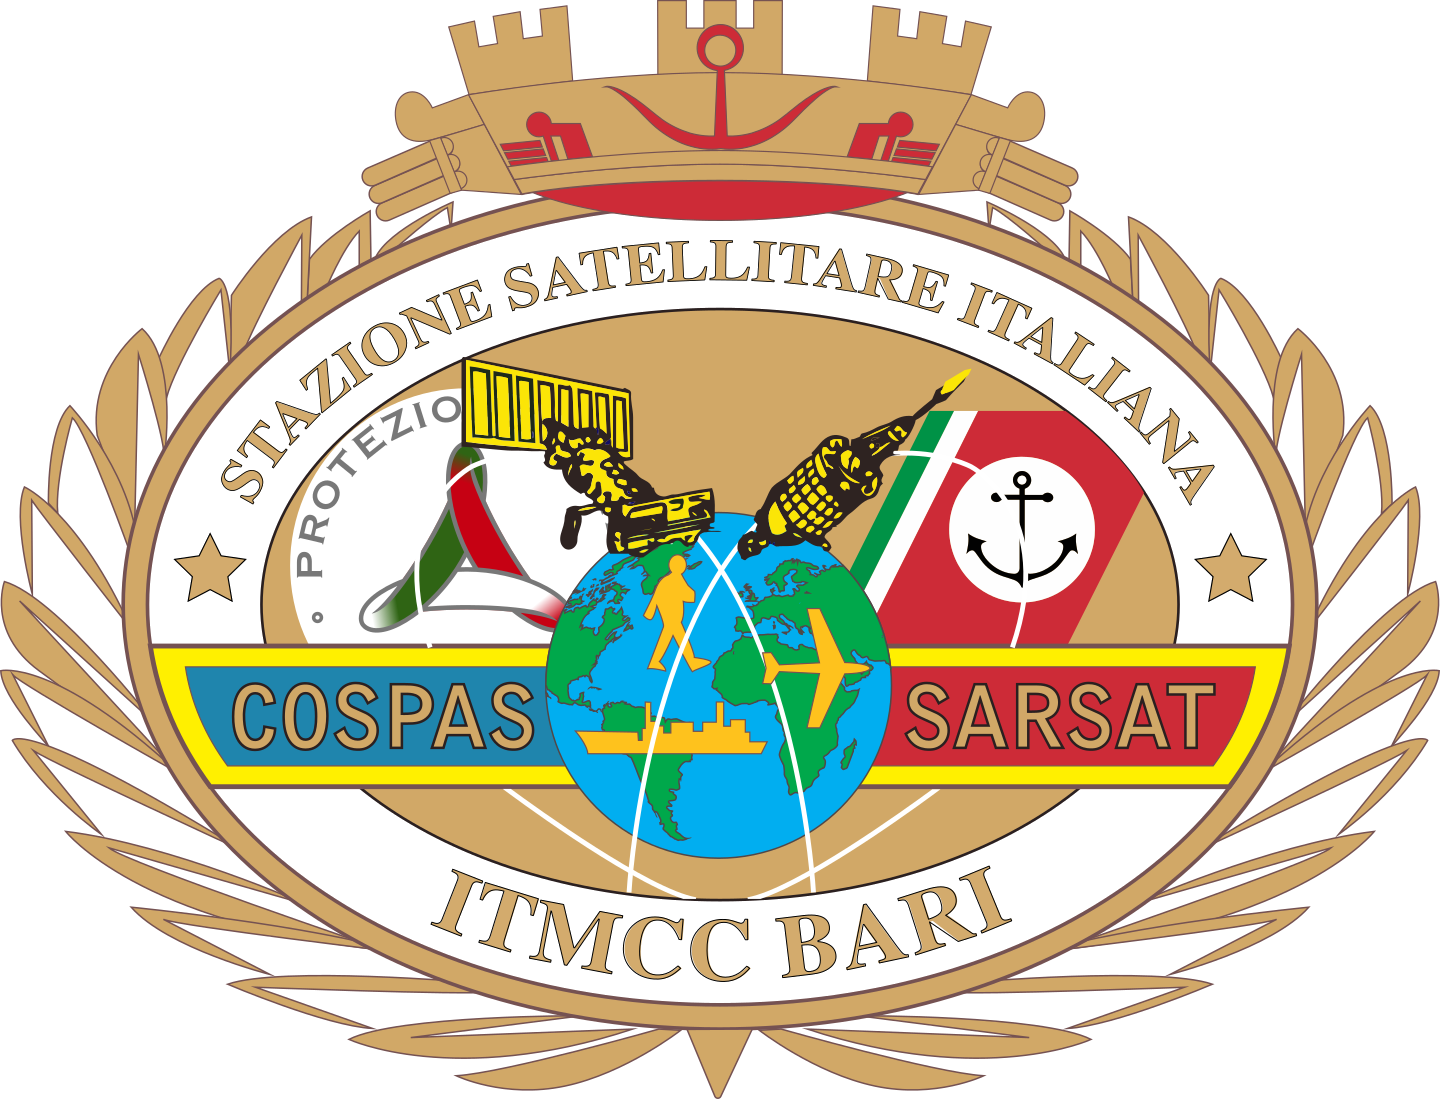 Stazione Satellitare Italiana COSPAS SARSAT